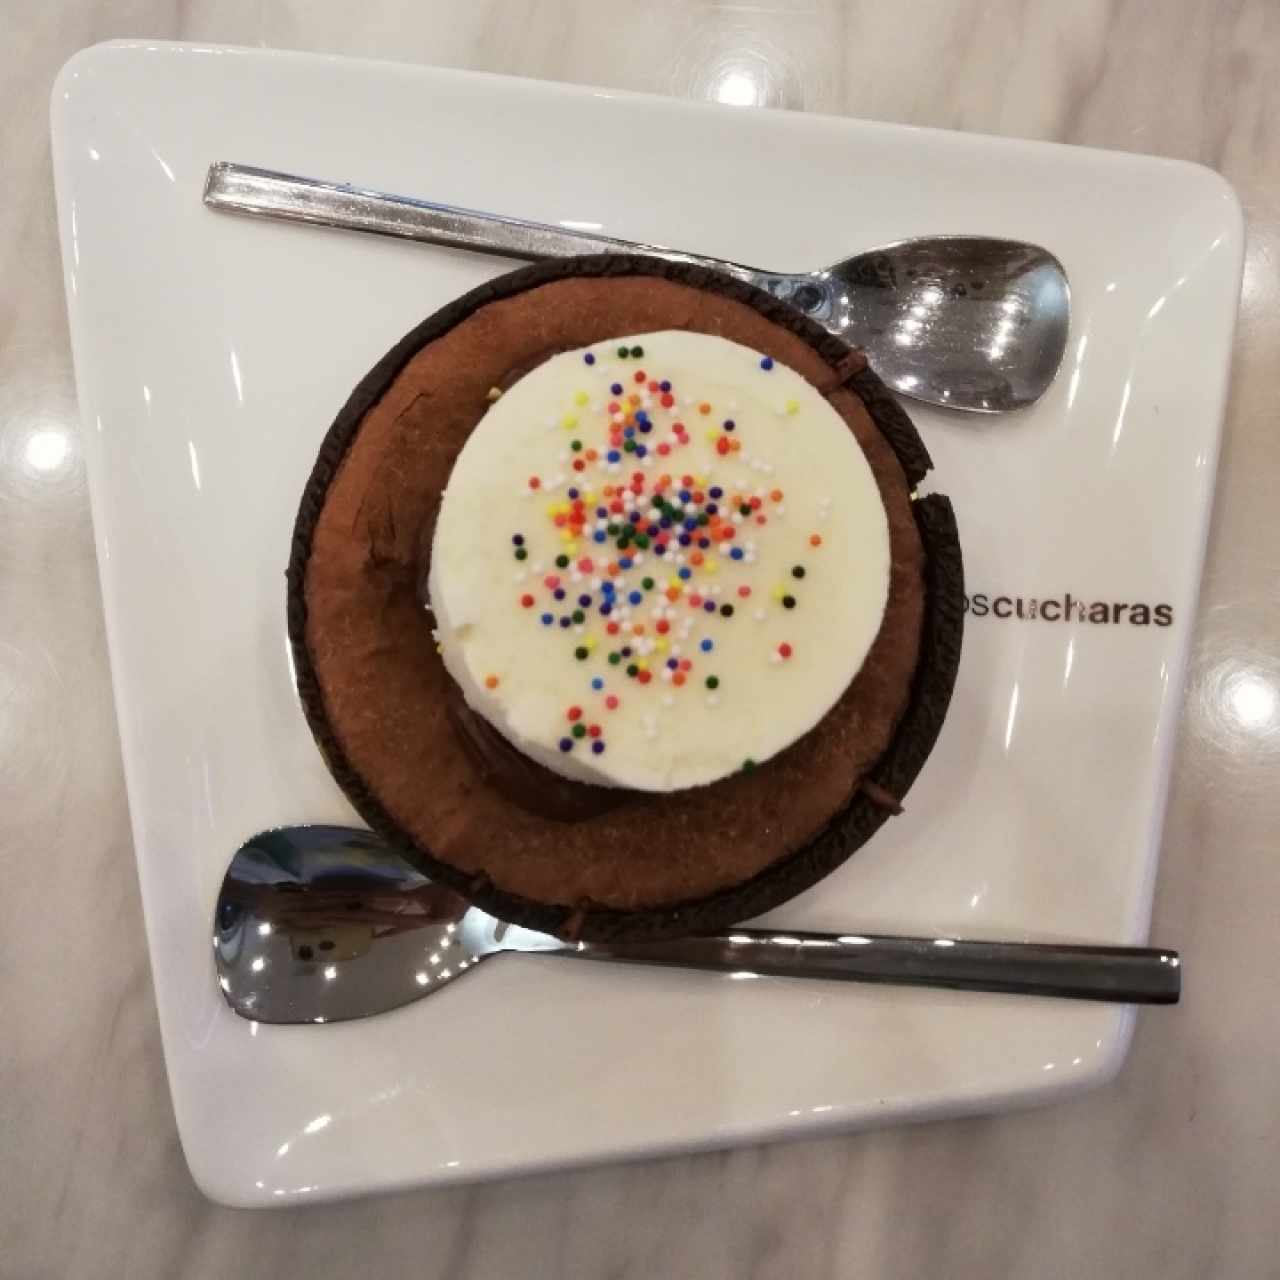 Choco Choco con helado